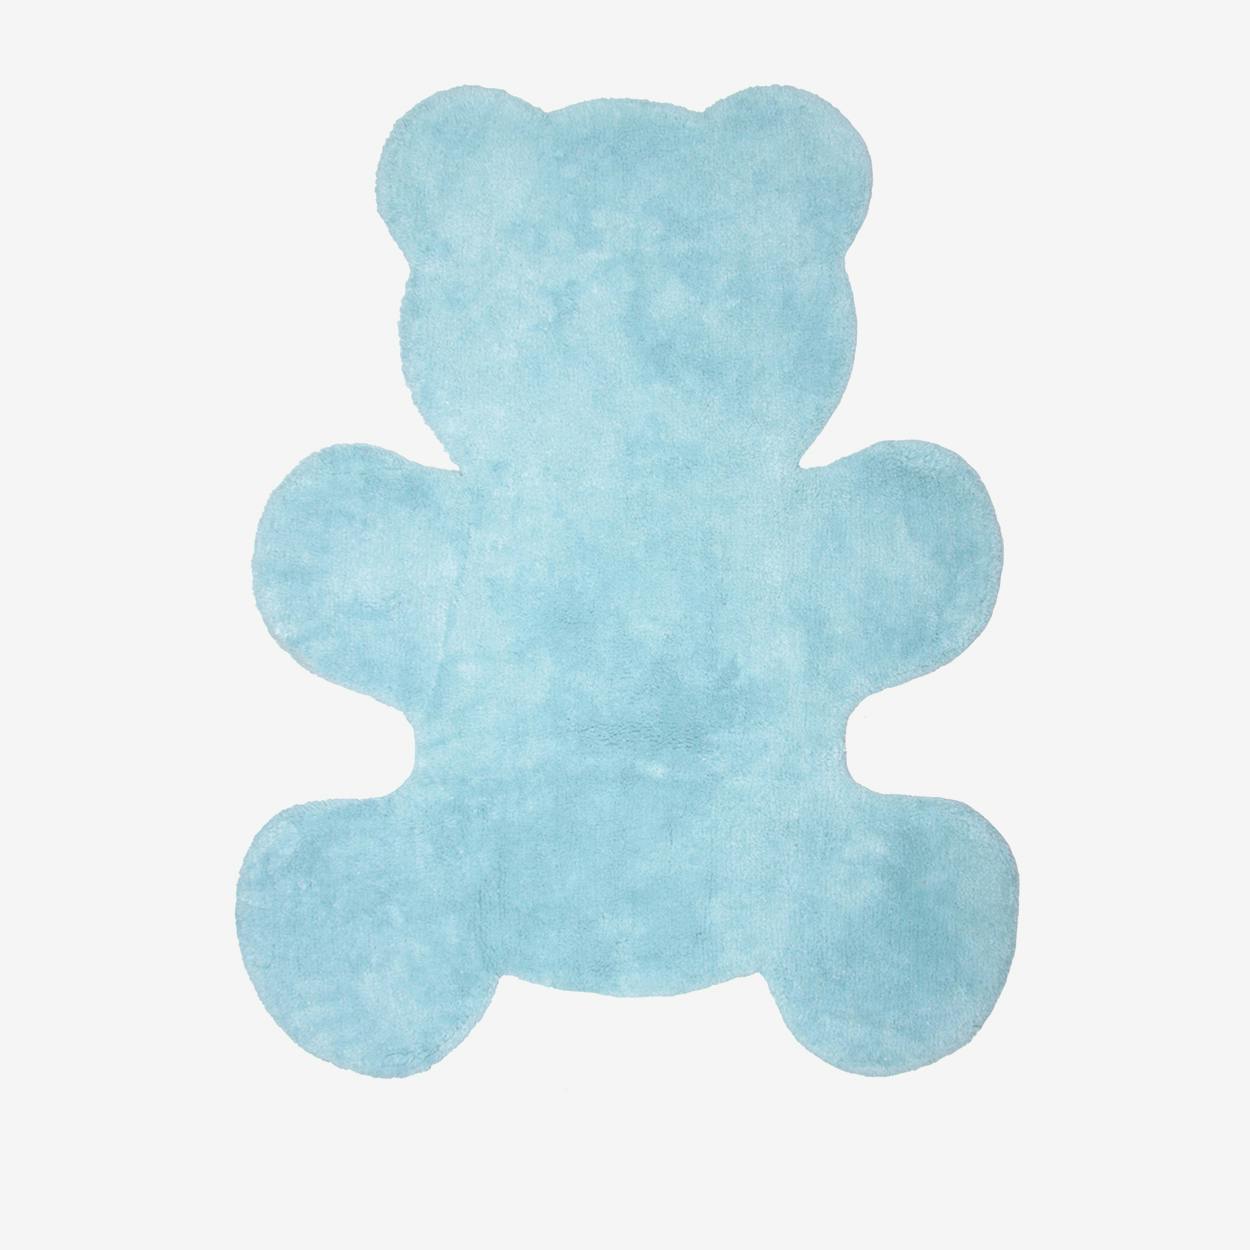 teddy rug